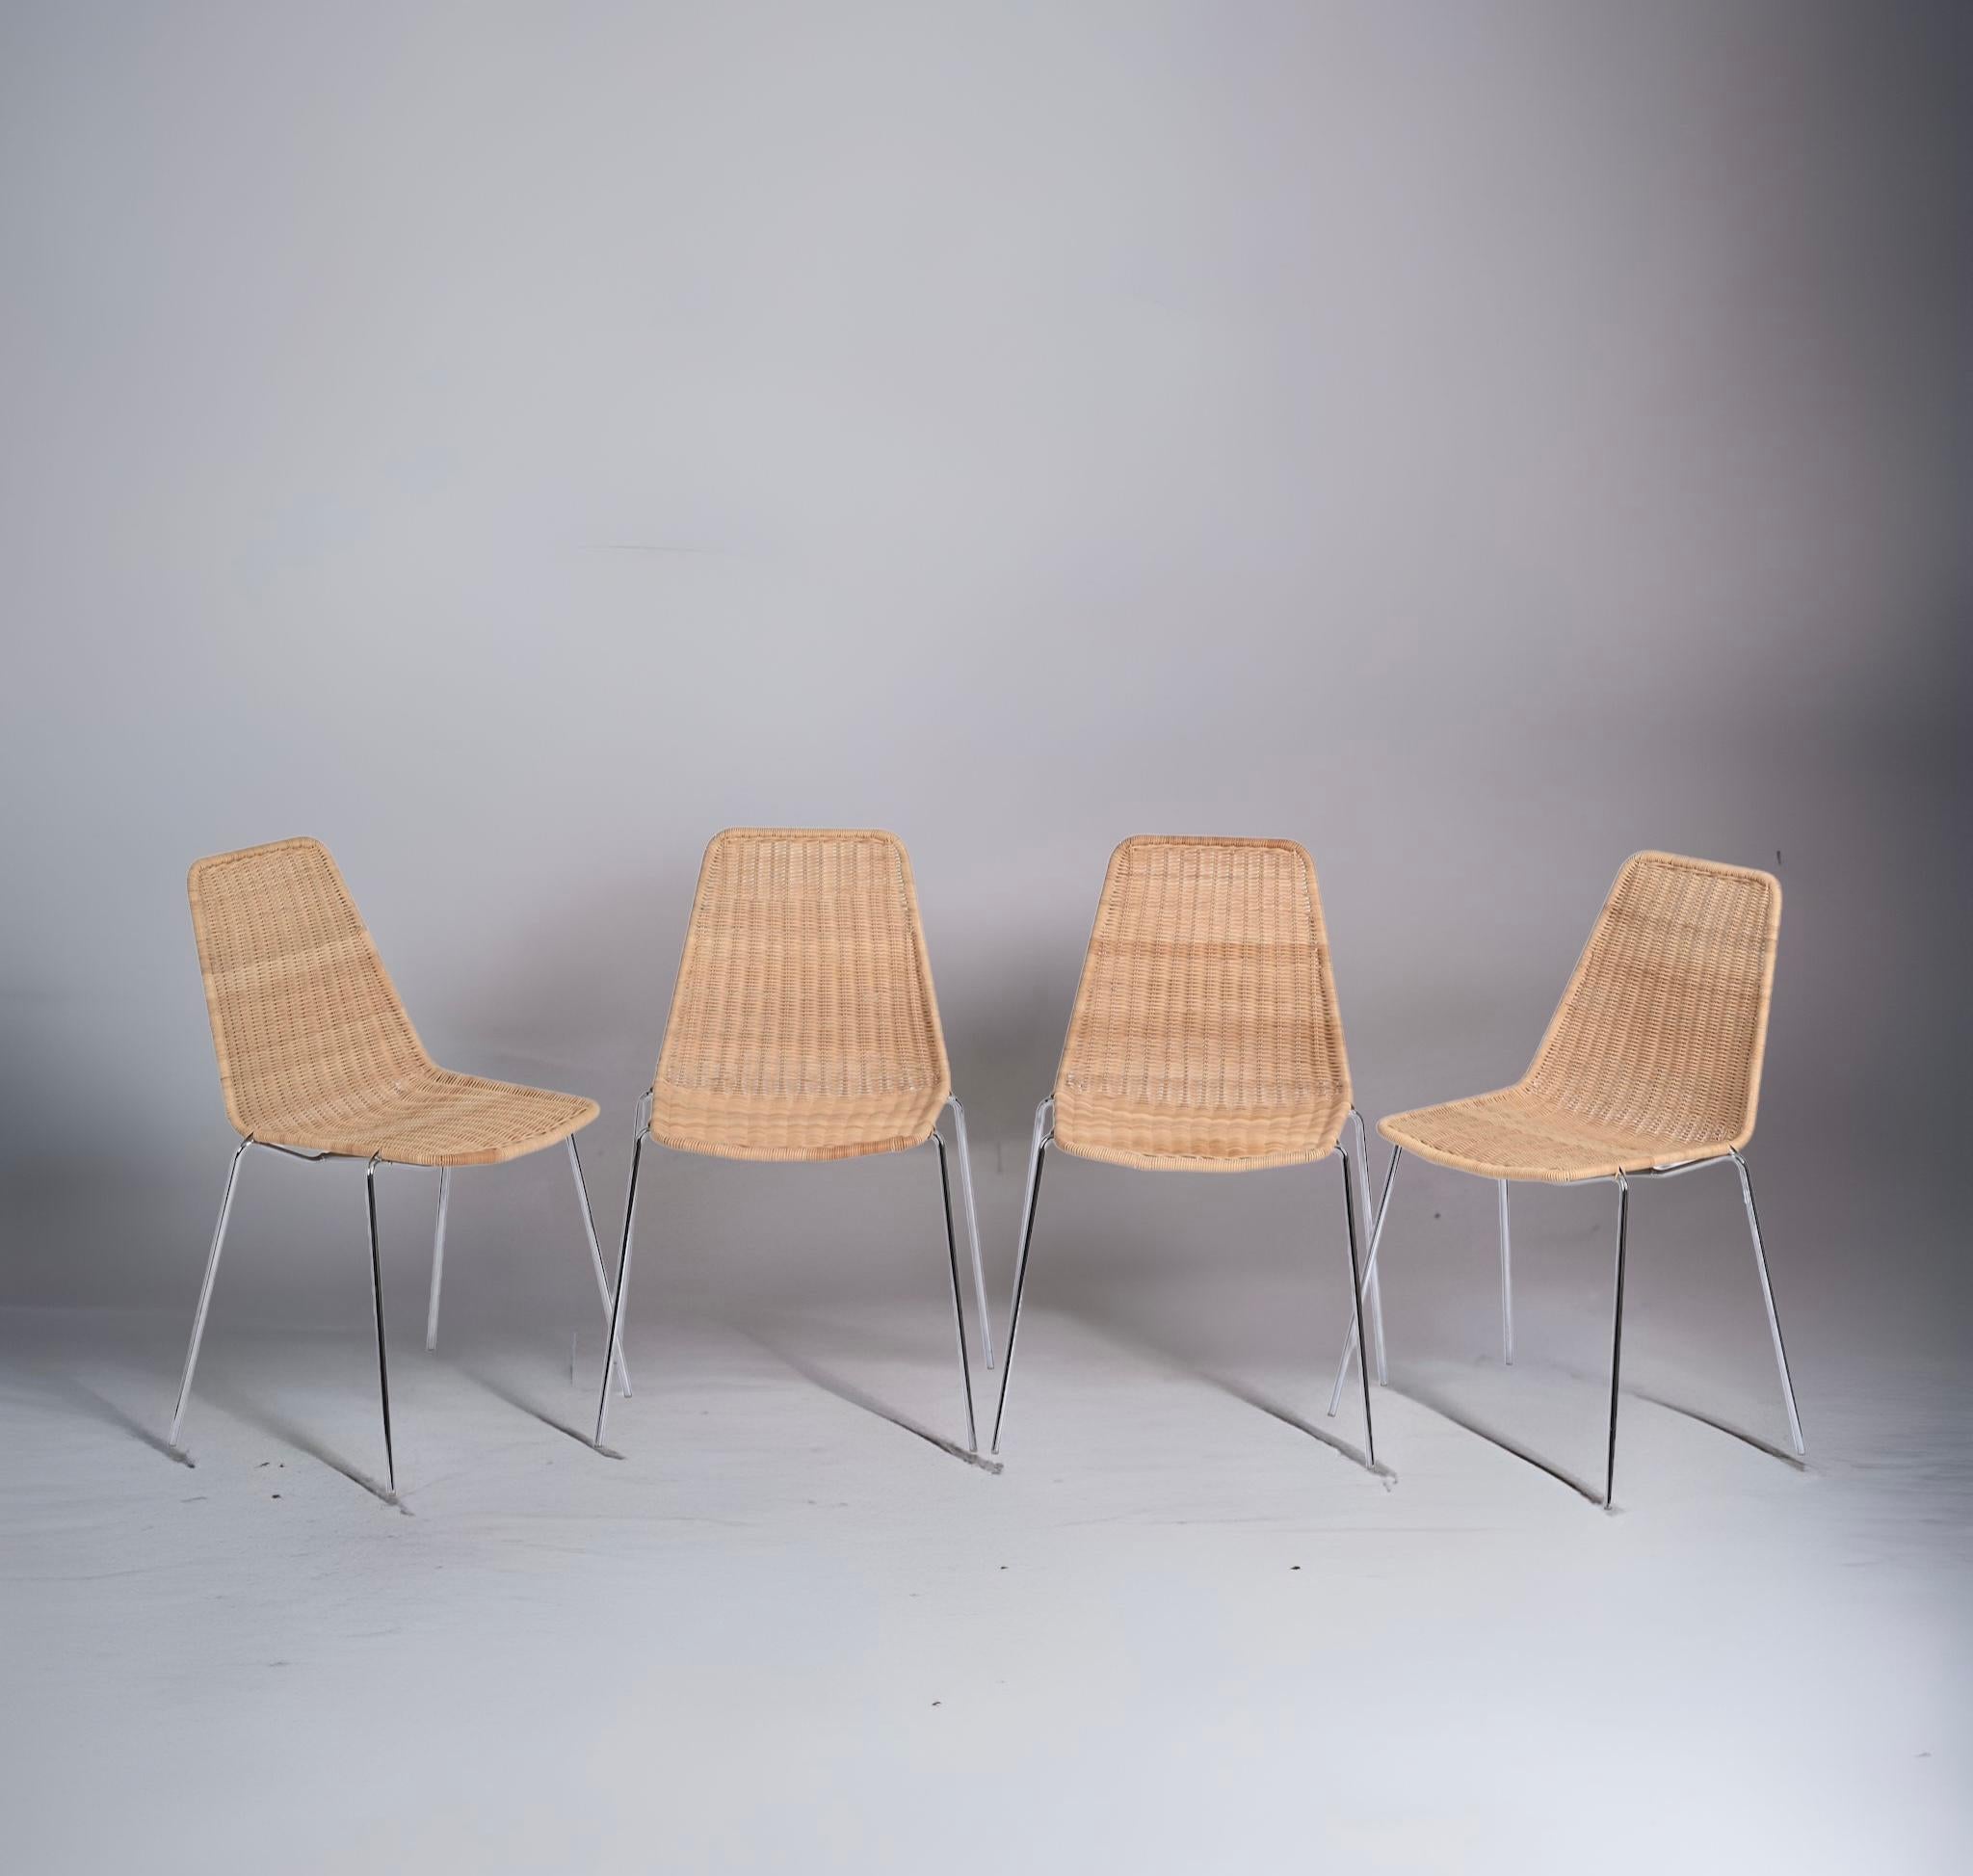 Magnifique ensemble de quatre chaises italiennes du milieu du siècle dernier, en osier et métal chromé. Ces pièces étonnantes ont été produites en Italie dans les années 1970 et attribuées aux designers Franco Campi e Carlo Graffi.

Le siège et le